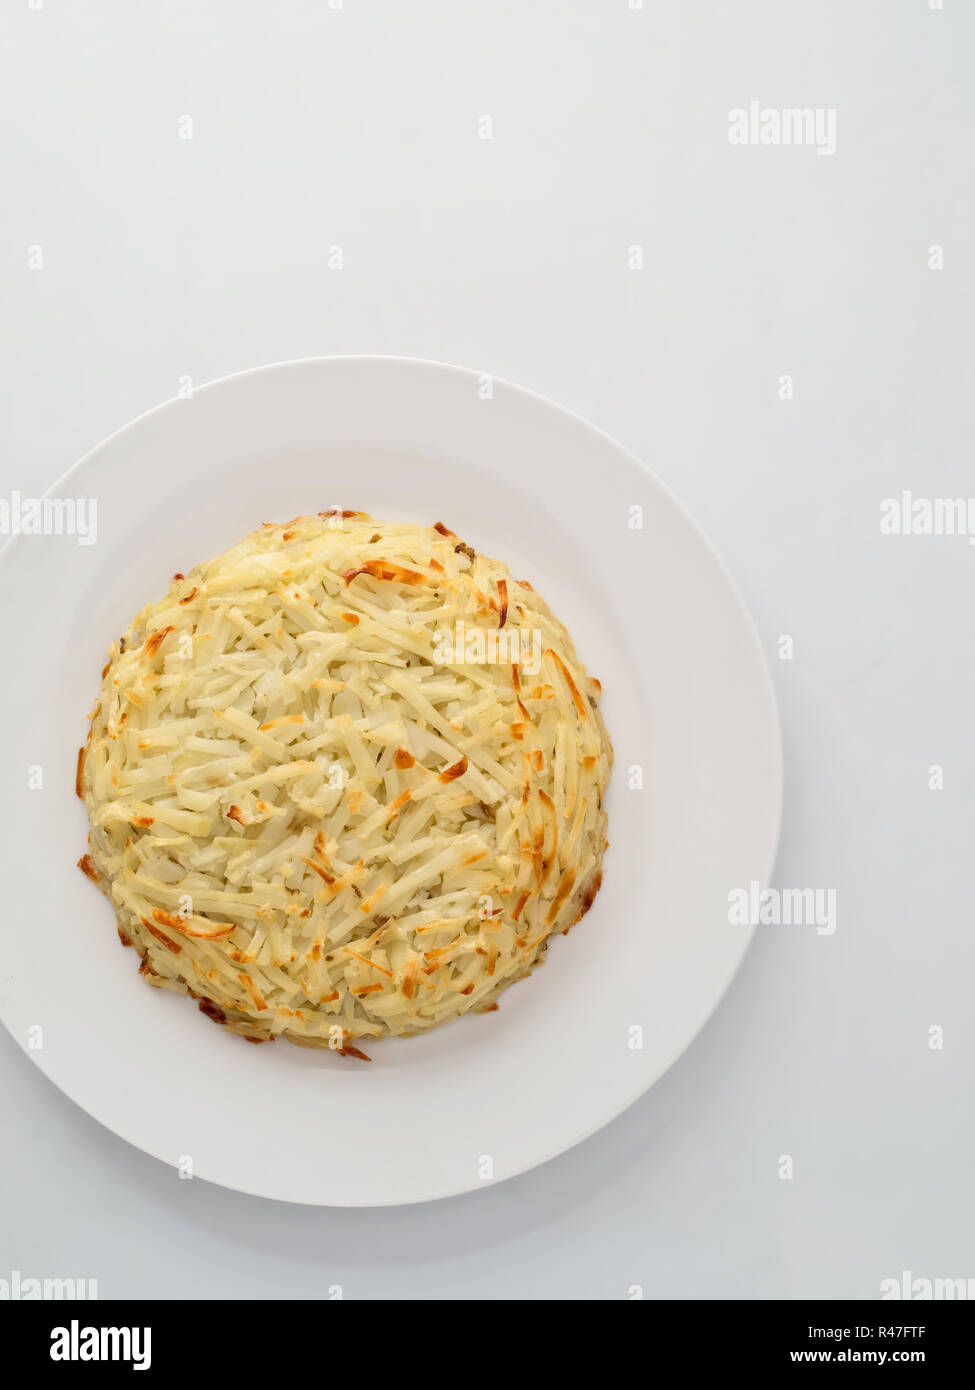 swiss potato rosti Stock Photo - Alamy